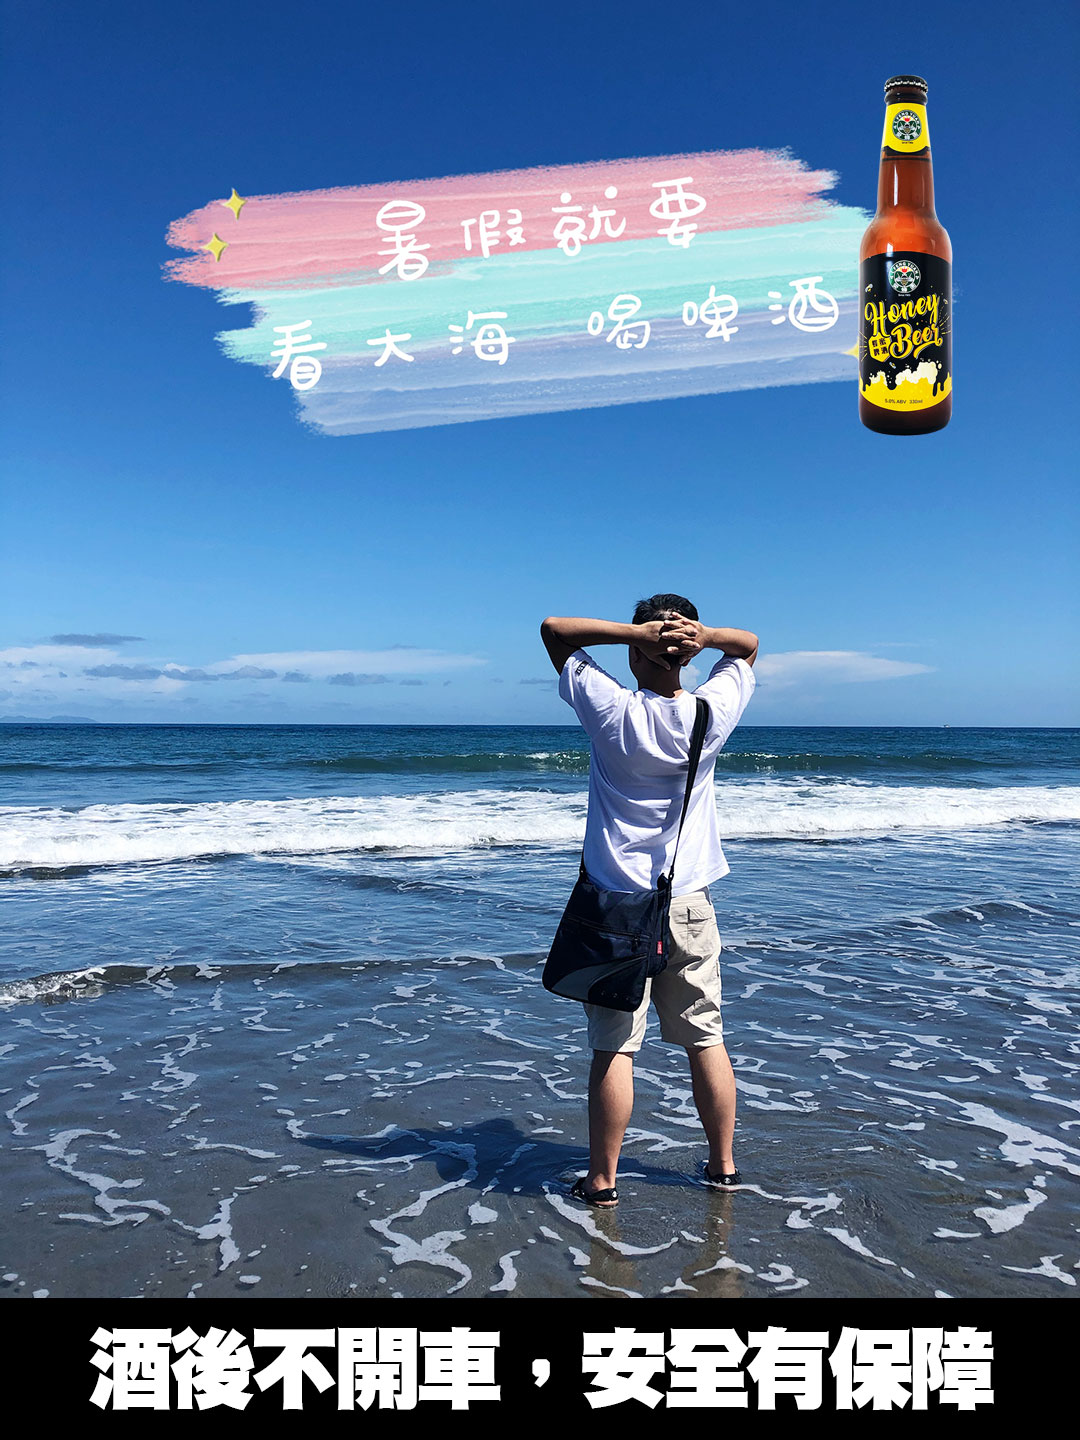 蜂蜜啤酒-大海篇.jpg